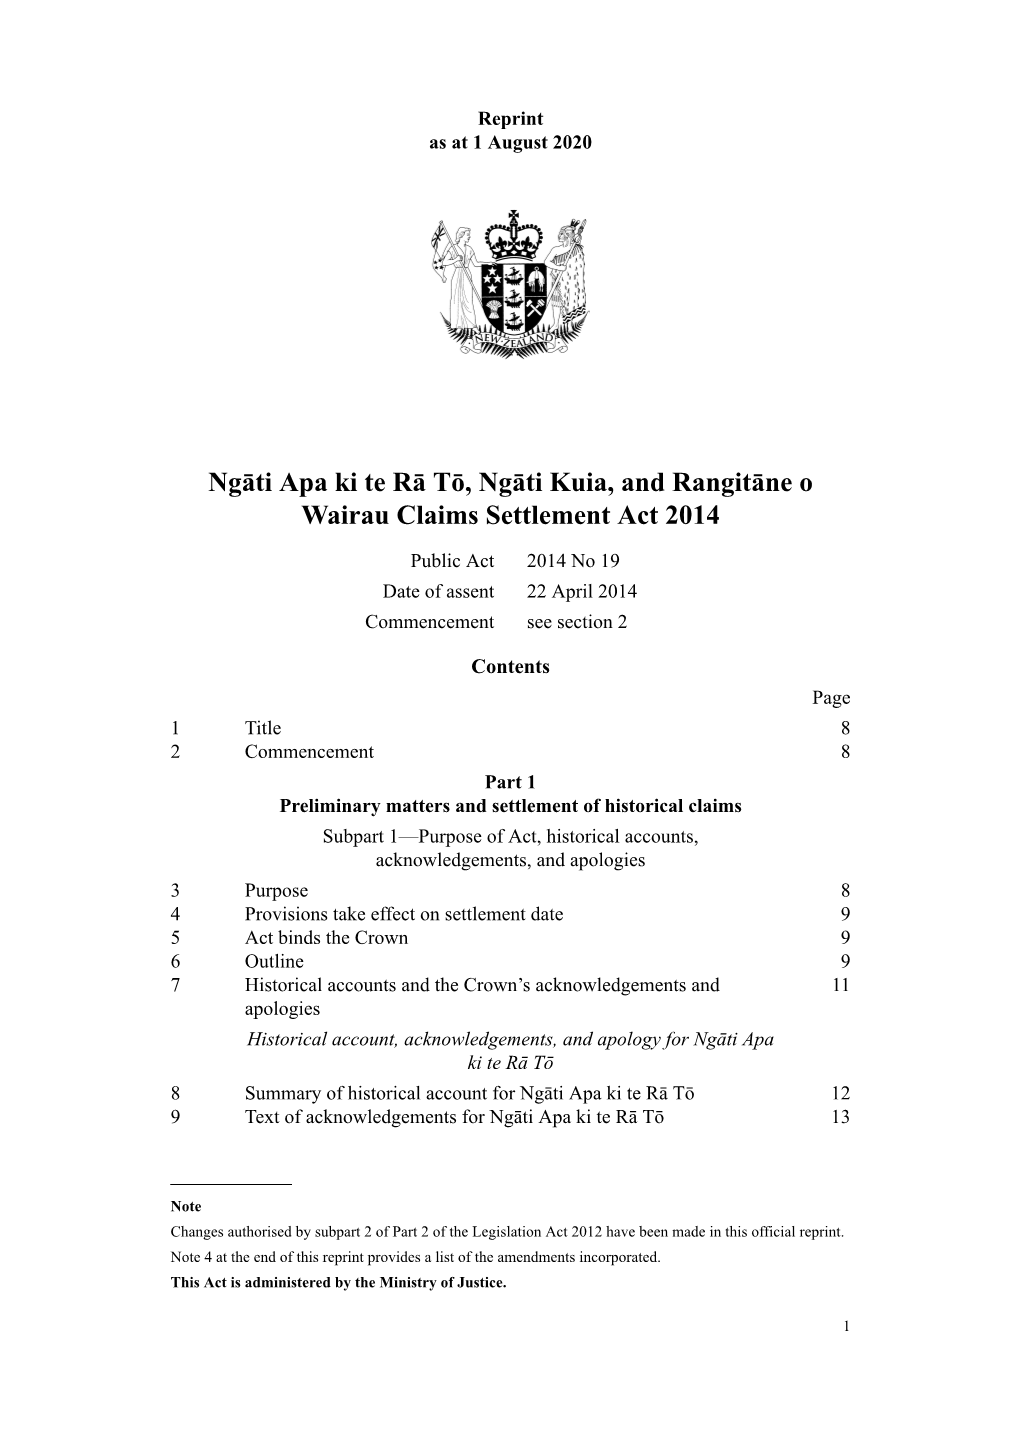 Ngāti Apa Ki Te Rā Tō, Ngāti Kuia, and Rangitāne O Wairau Claims Settlement Act 2014